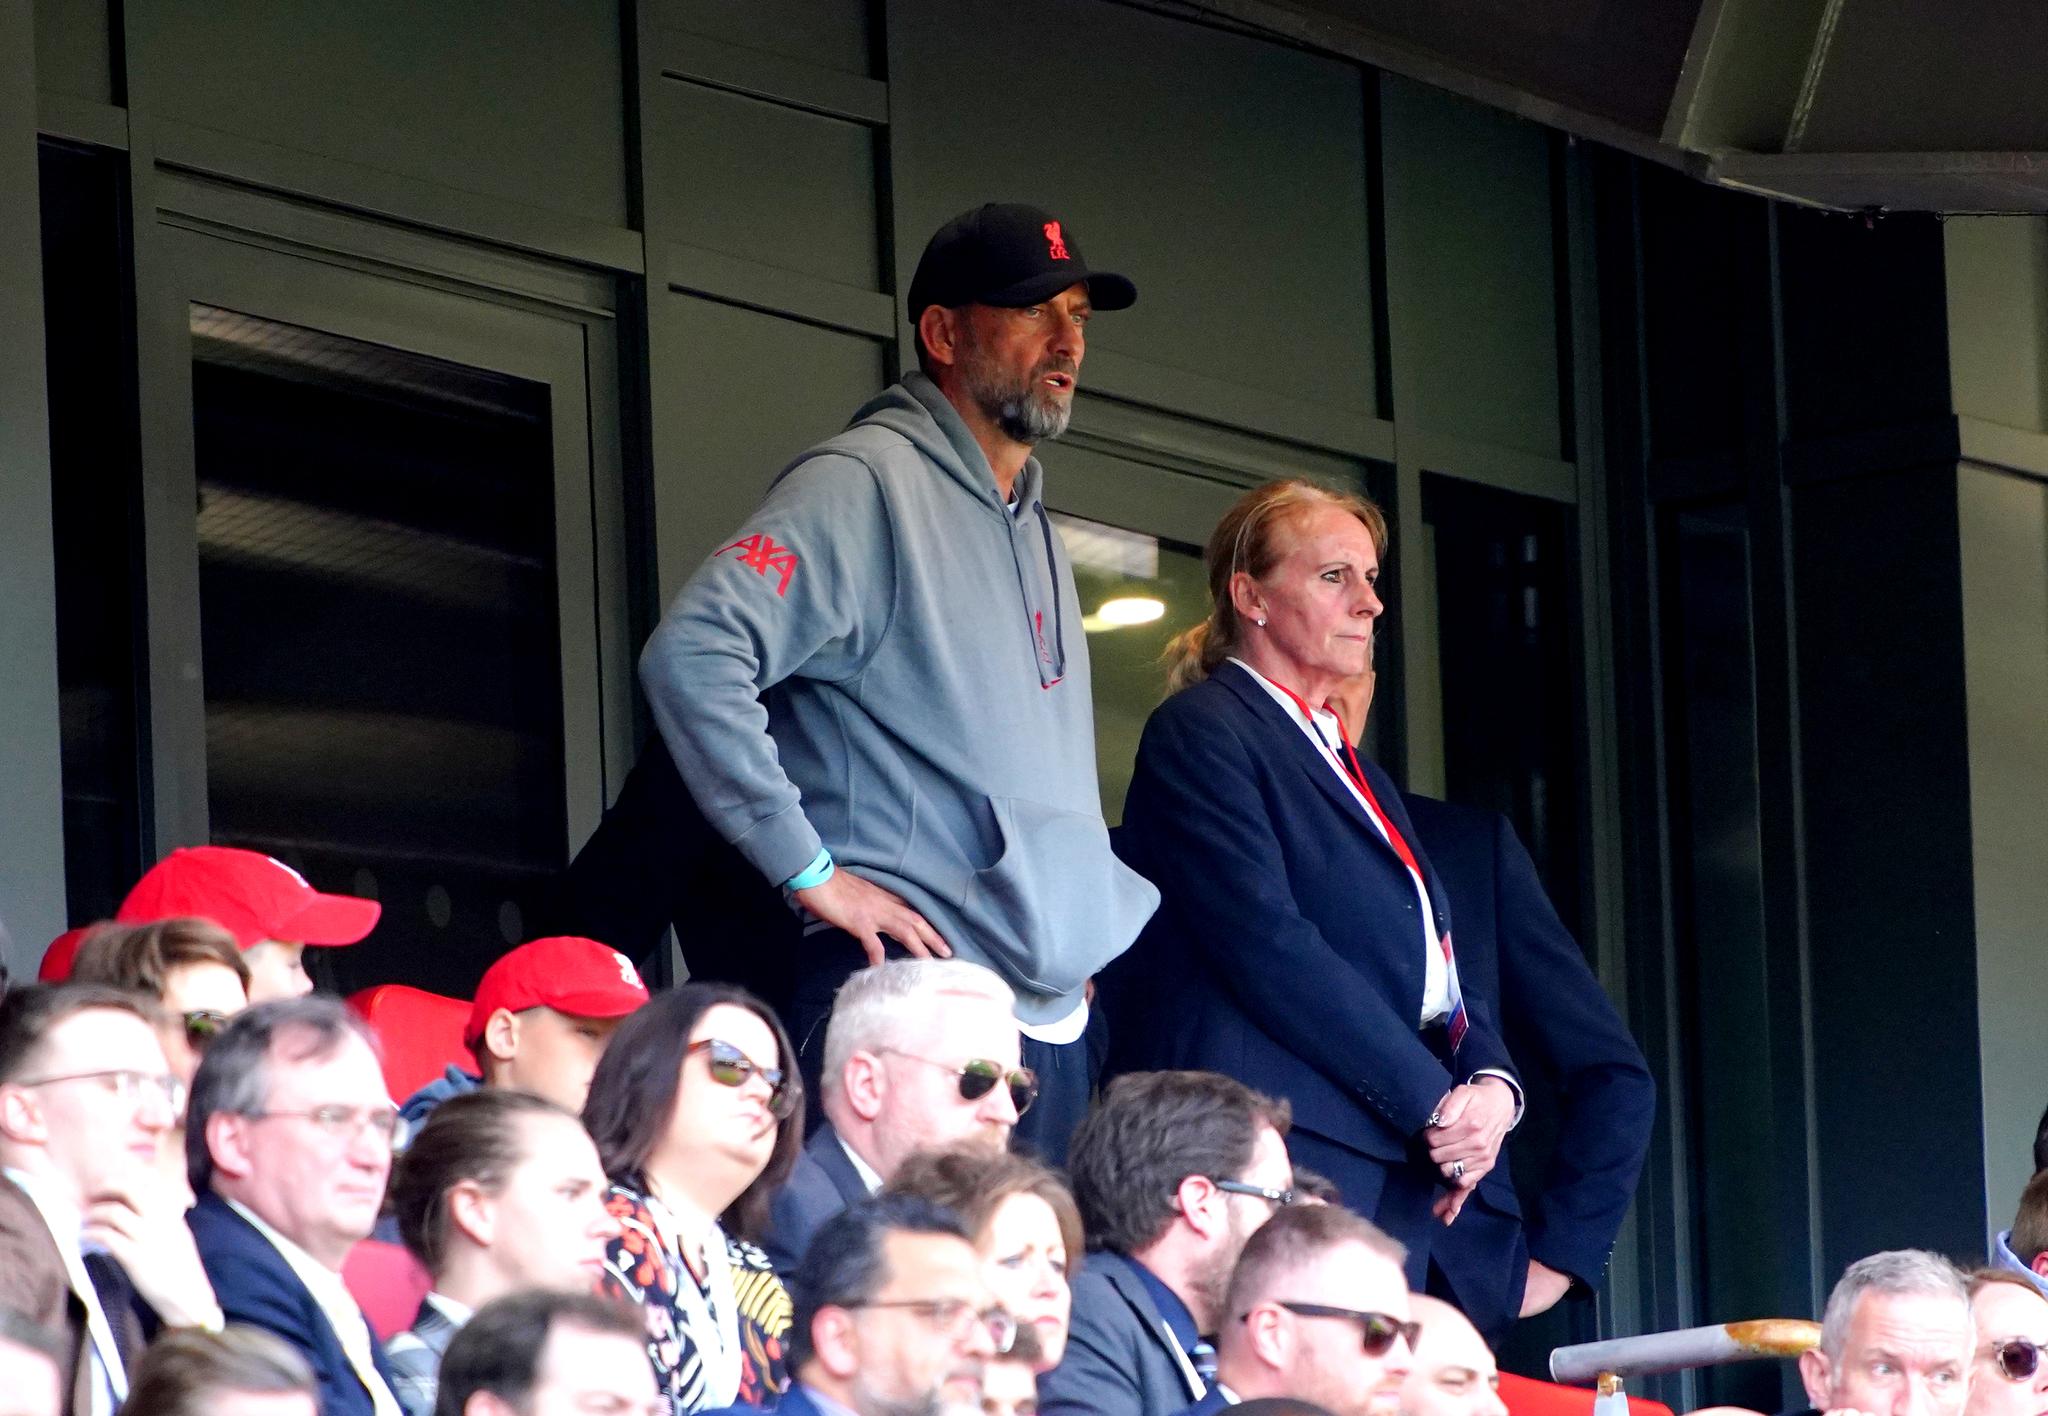 SUSPENDERT: Liverpool-manager Jürgen Klopp var ikke på sidelinjen i dag. Han er suspendert for uttalelsene i kjølvannet av kampen mot Tottenham tidligere i vår.